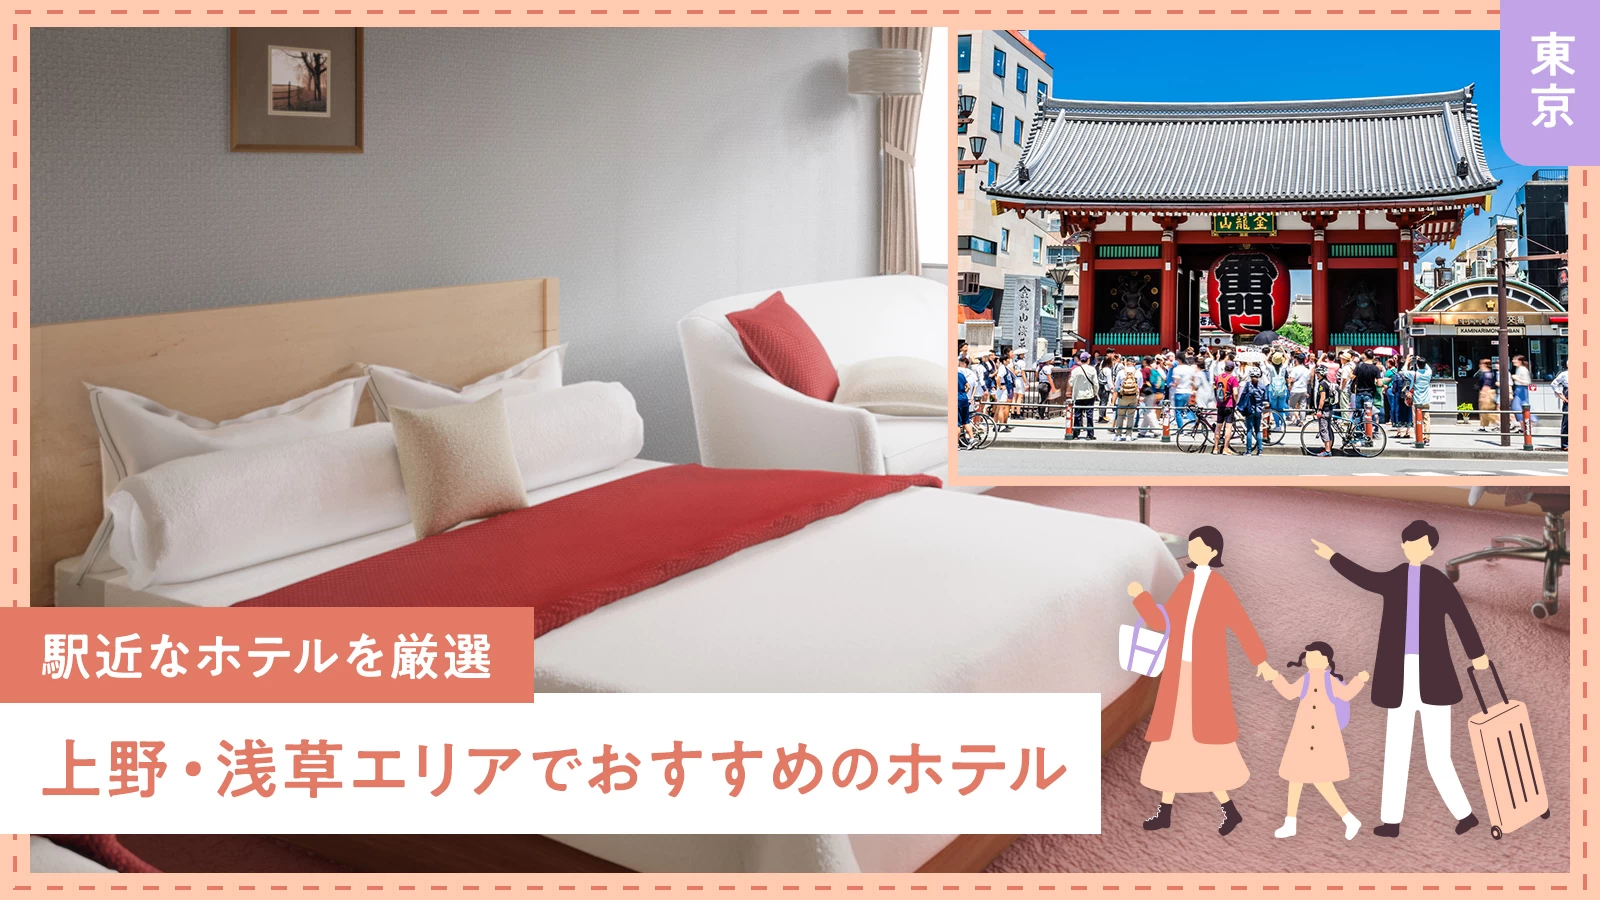 【東京】上野・浅草エリアでおすすめのホテル2軒を徹底解説 駅近なホテルを厳選